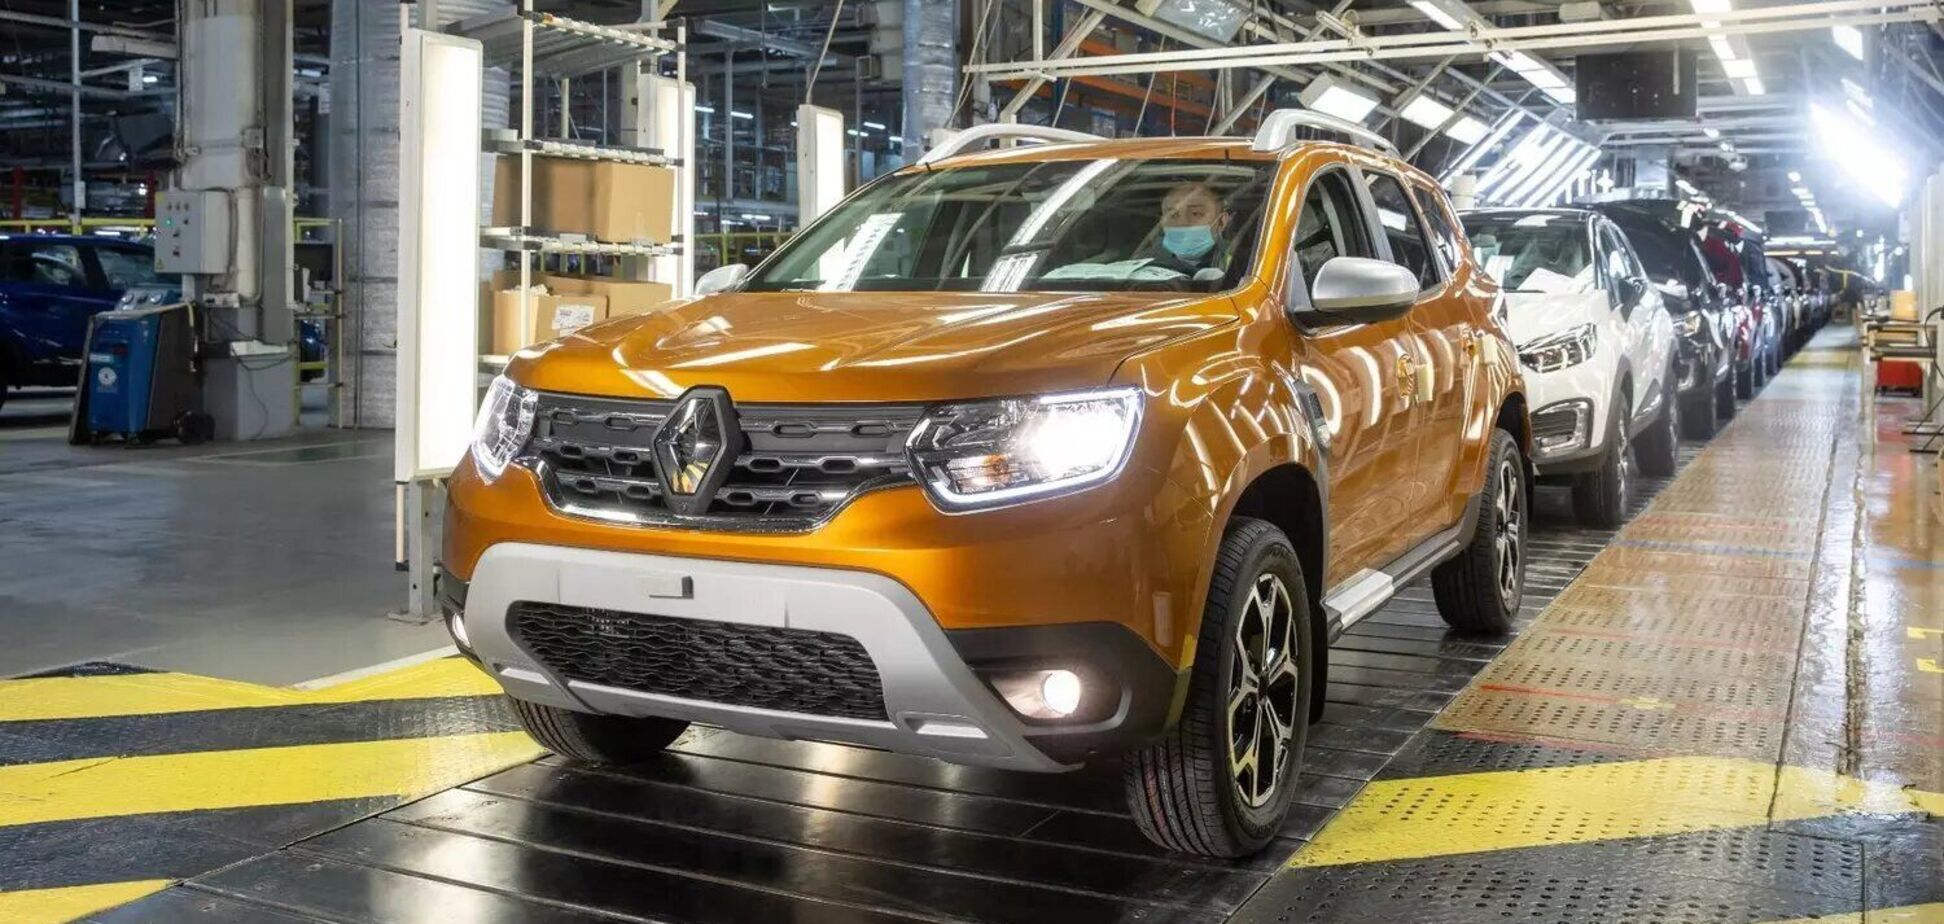 Renault нарешті зупинила промислову діяльності в Росії